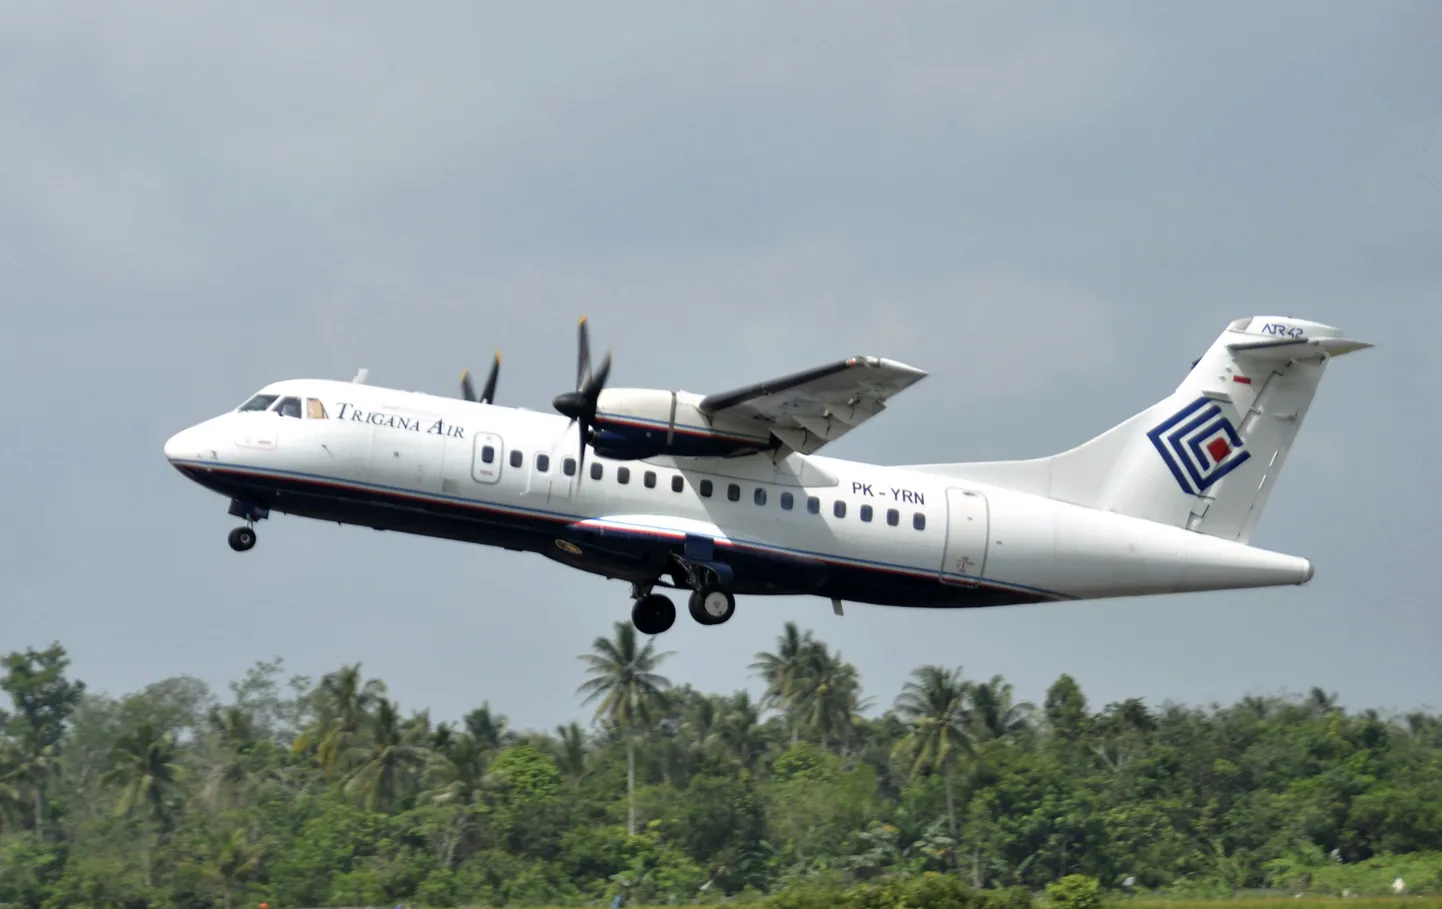 В Индонезии спасатели обнаружили бортовой самописец разбившегося самолета авиакомпании Trigana Air Service.